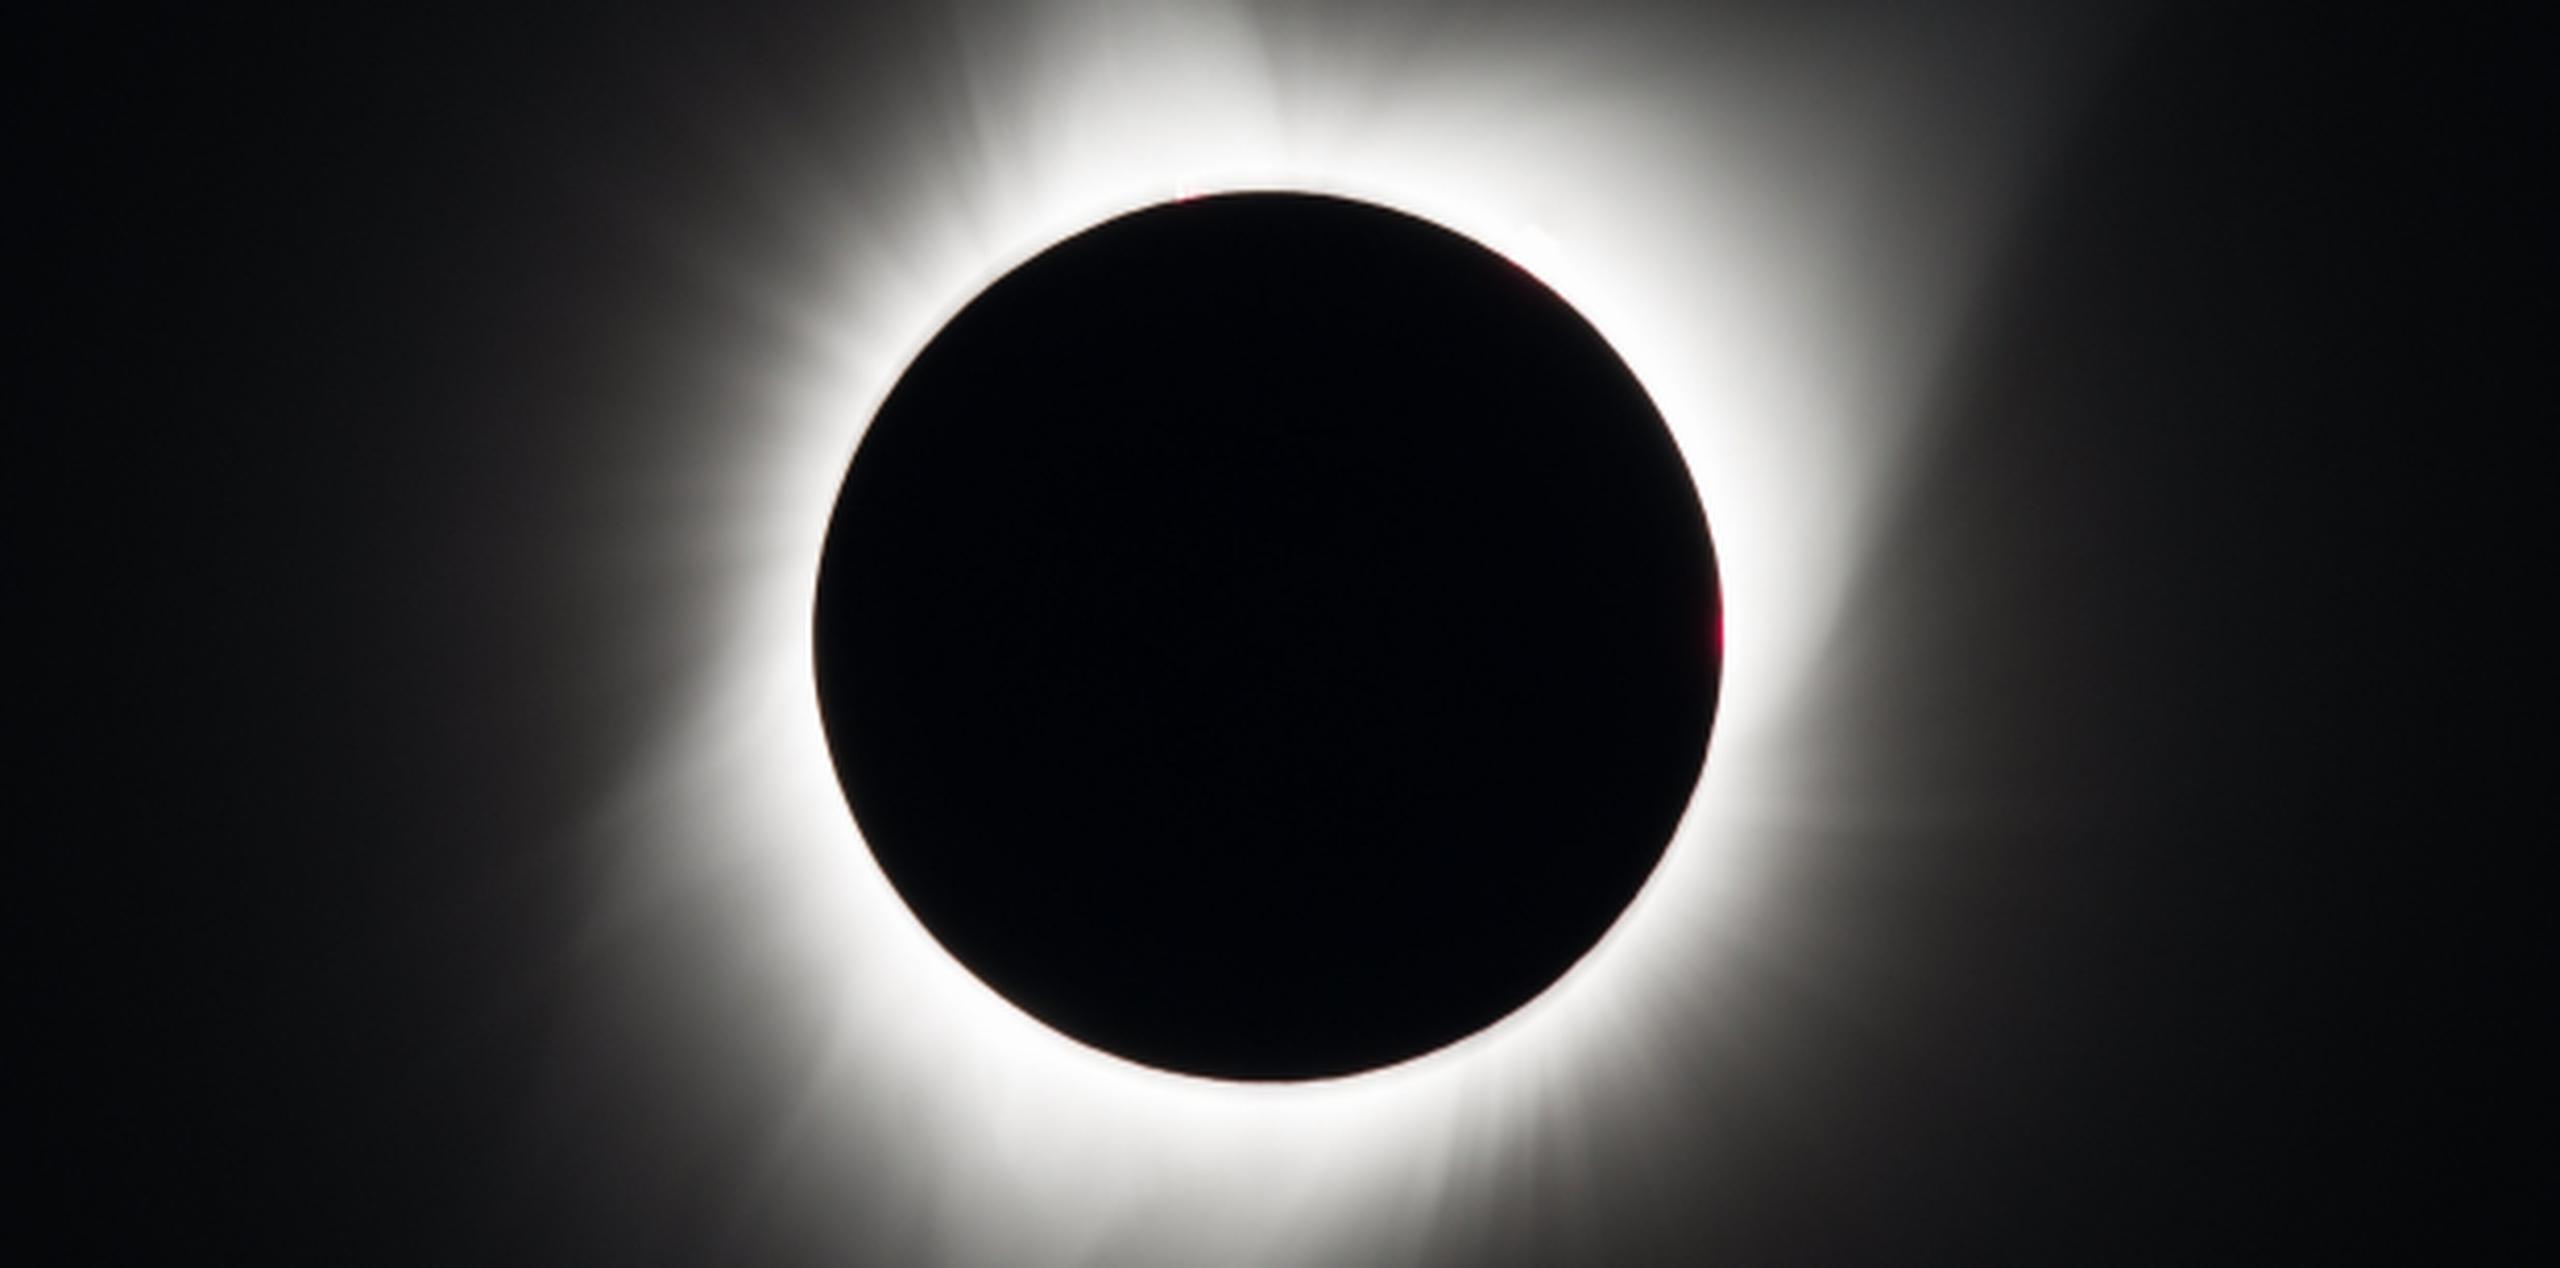 El 10 de agosto, Amazon empezó a notificar a sus clientes de que estaba retirando algunos lentes para ver el eclipse. (EFE / NASA / Aubrey Gemignani)